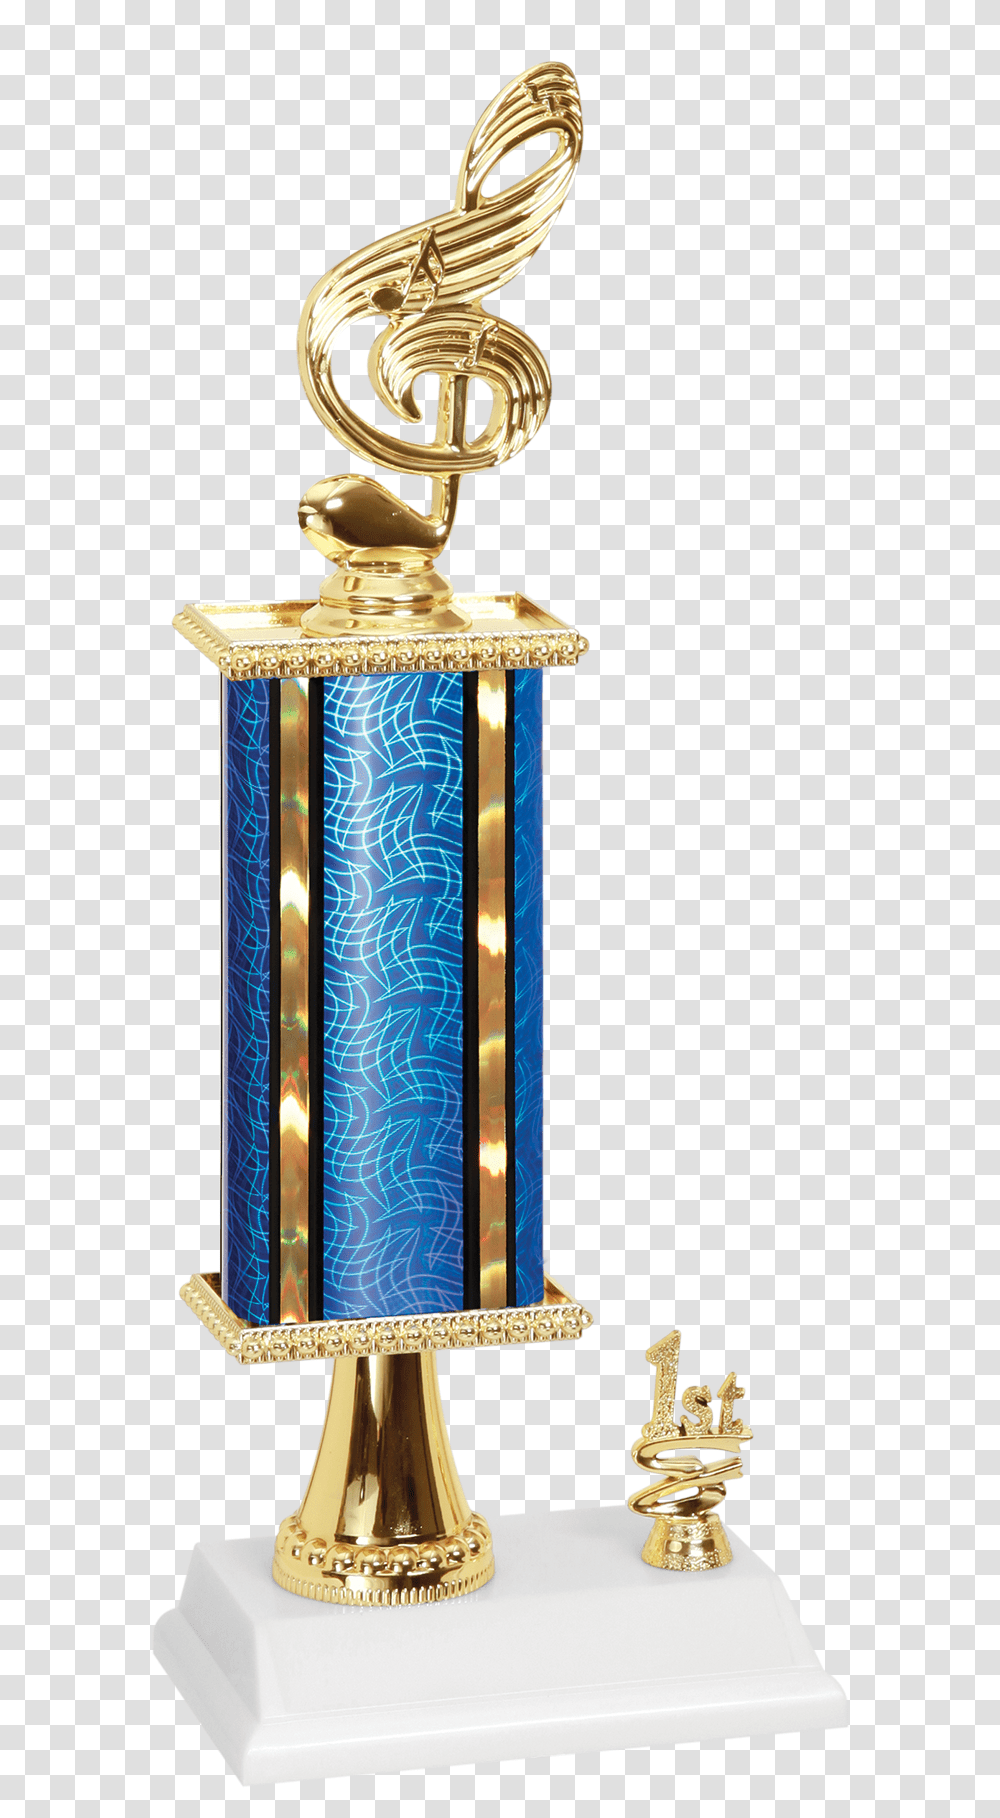 Trophy, Lamp, Sink Faucet Transparent Png